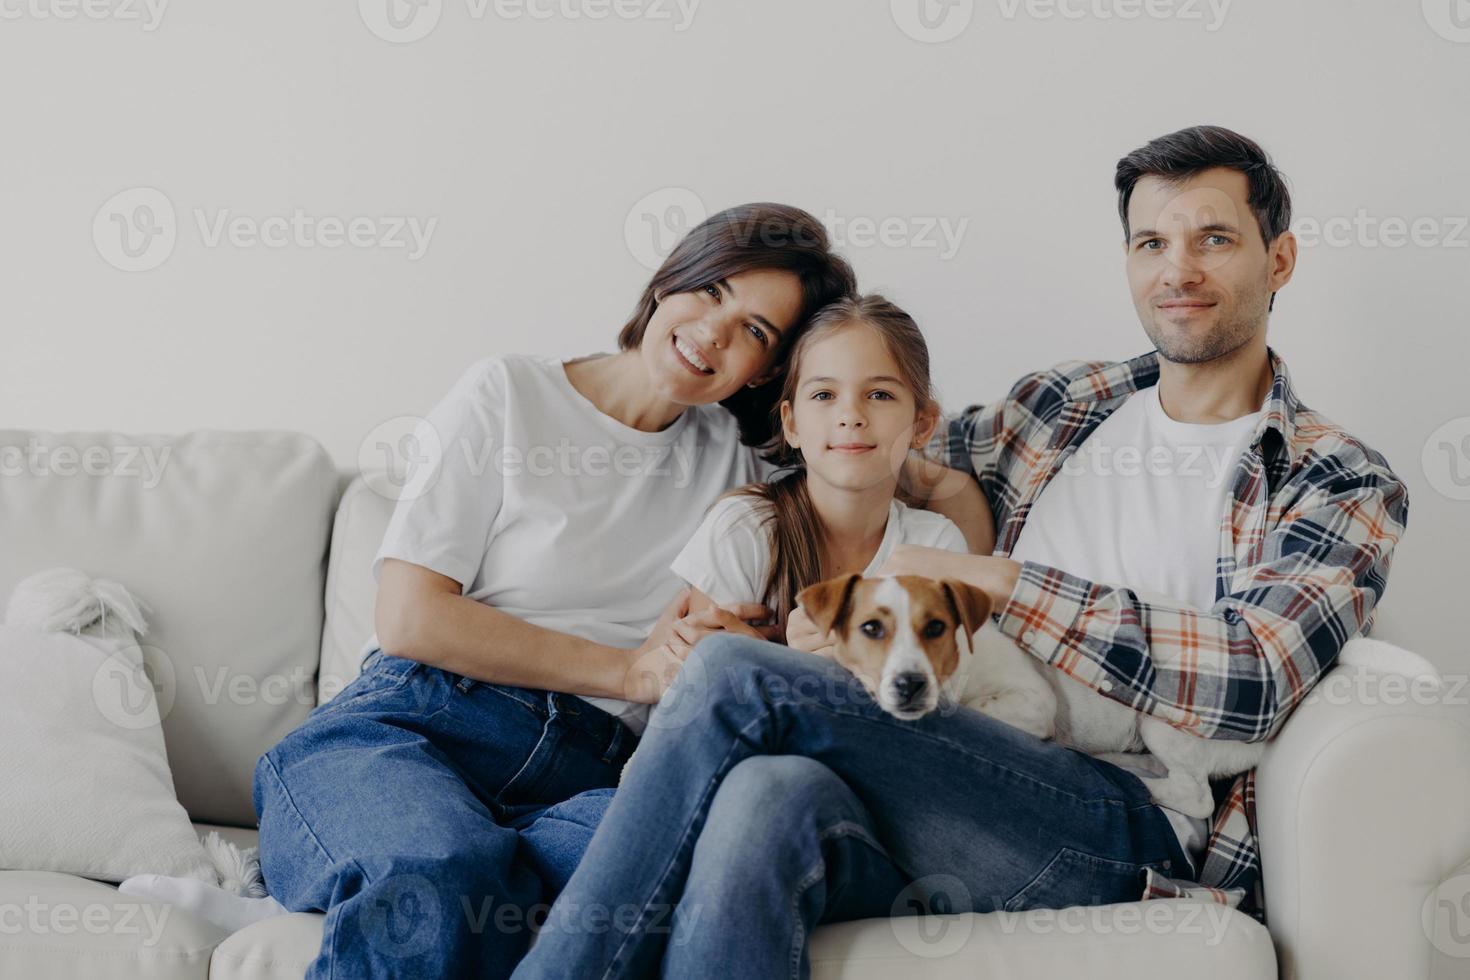 retrato de una familia afectuosa abrazada y sentada en el sofá de la sala de estar, cambiar su hogar, tener expresiones felices. padre, madre, hija y perro posan para hacer retratos, pasar un buen rato foto